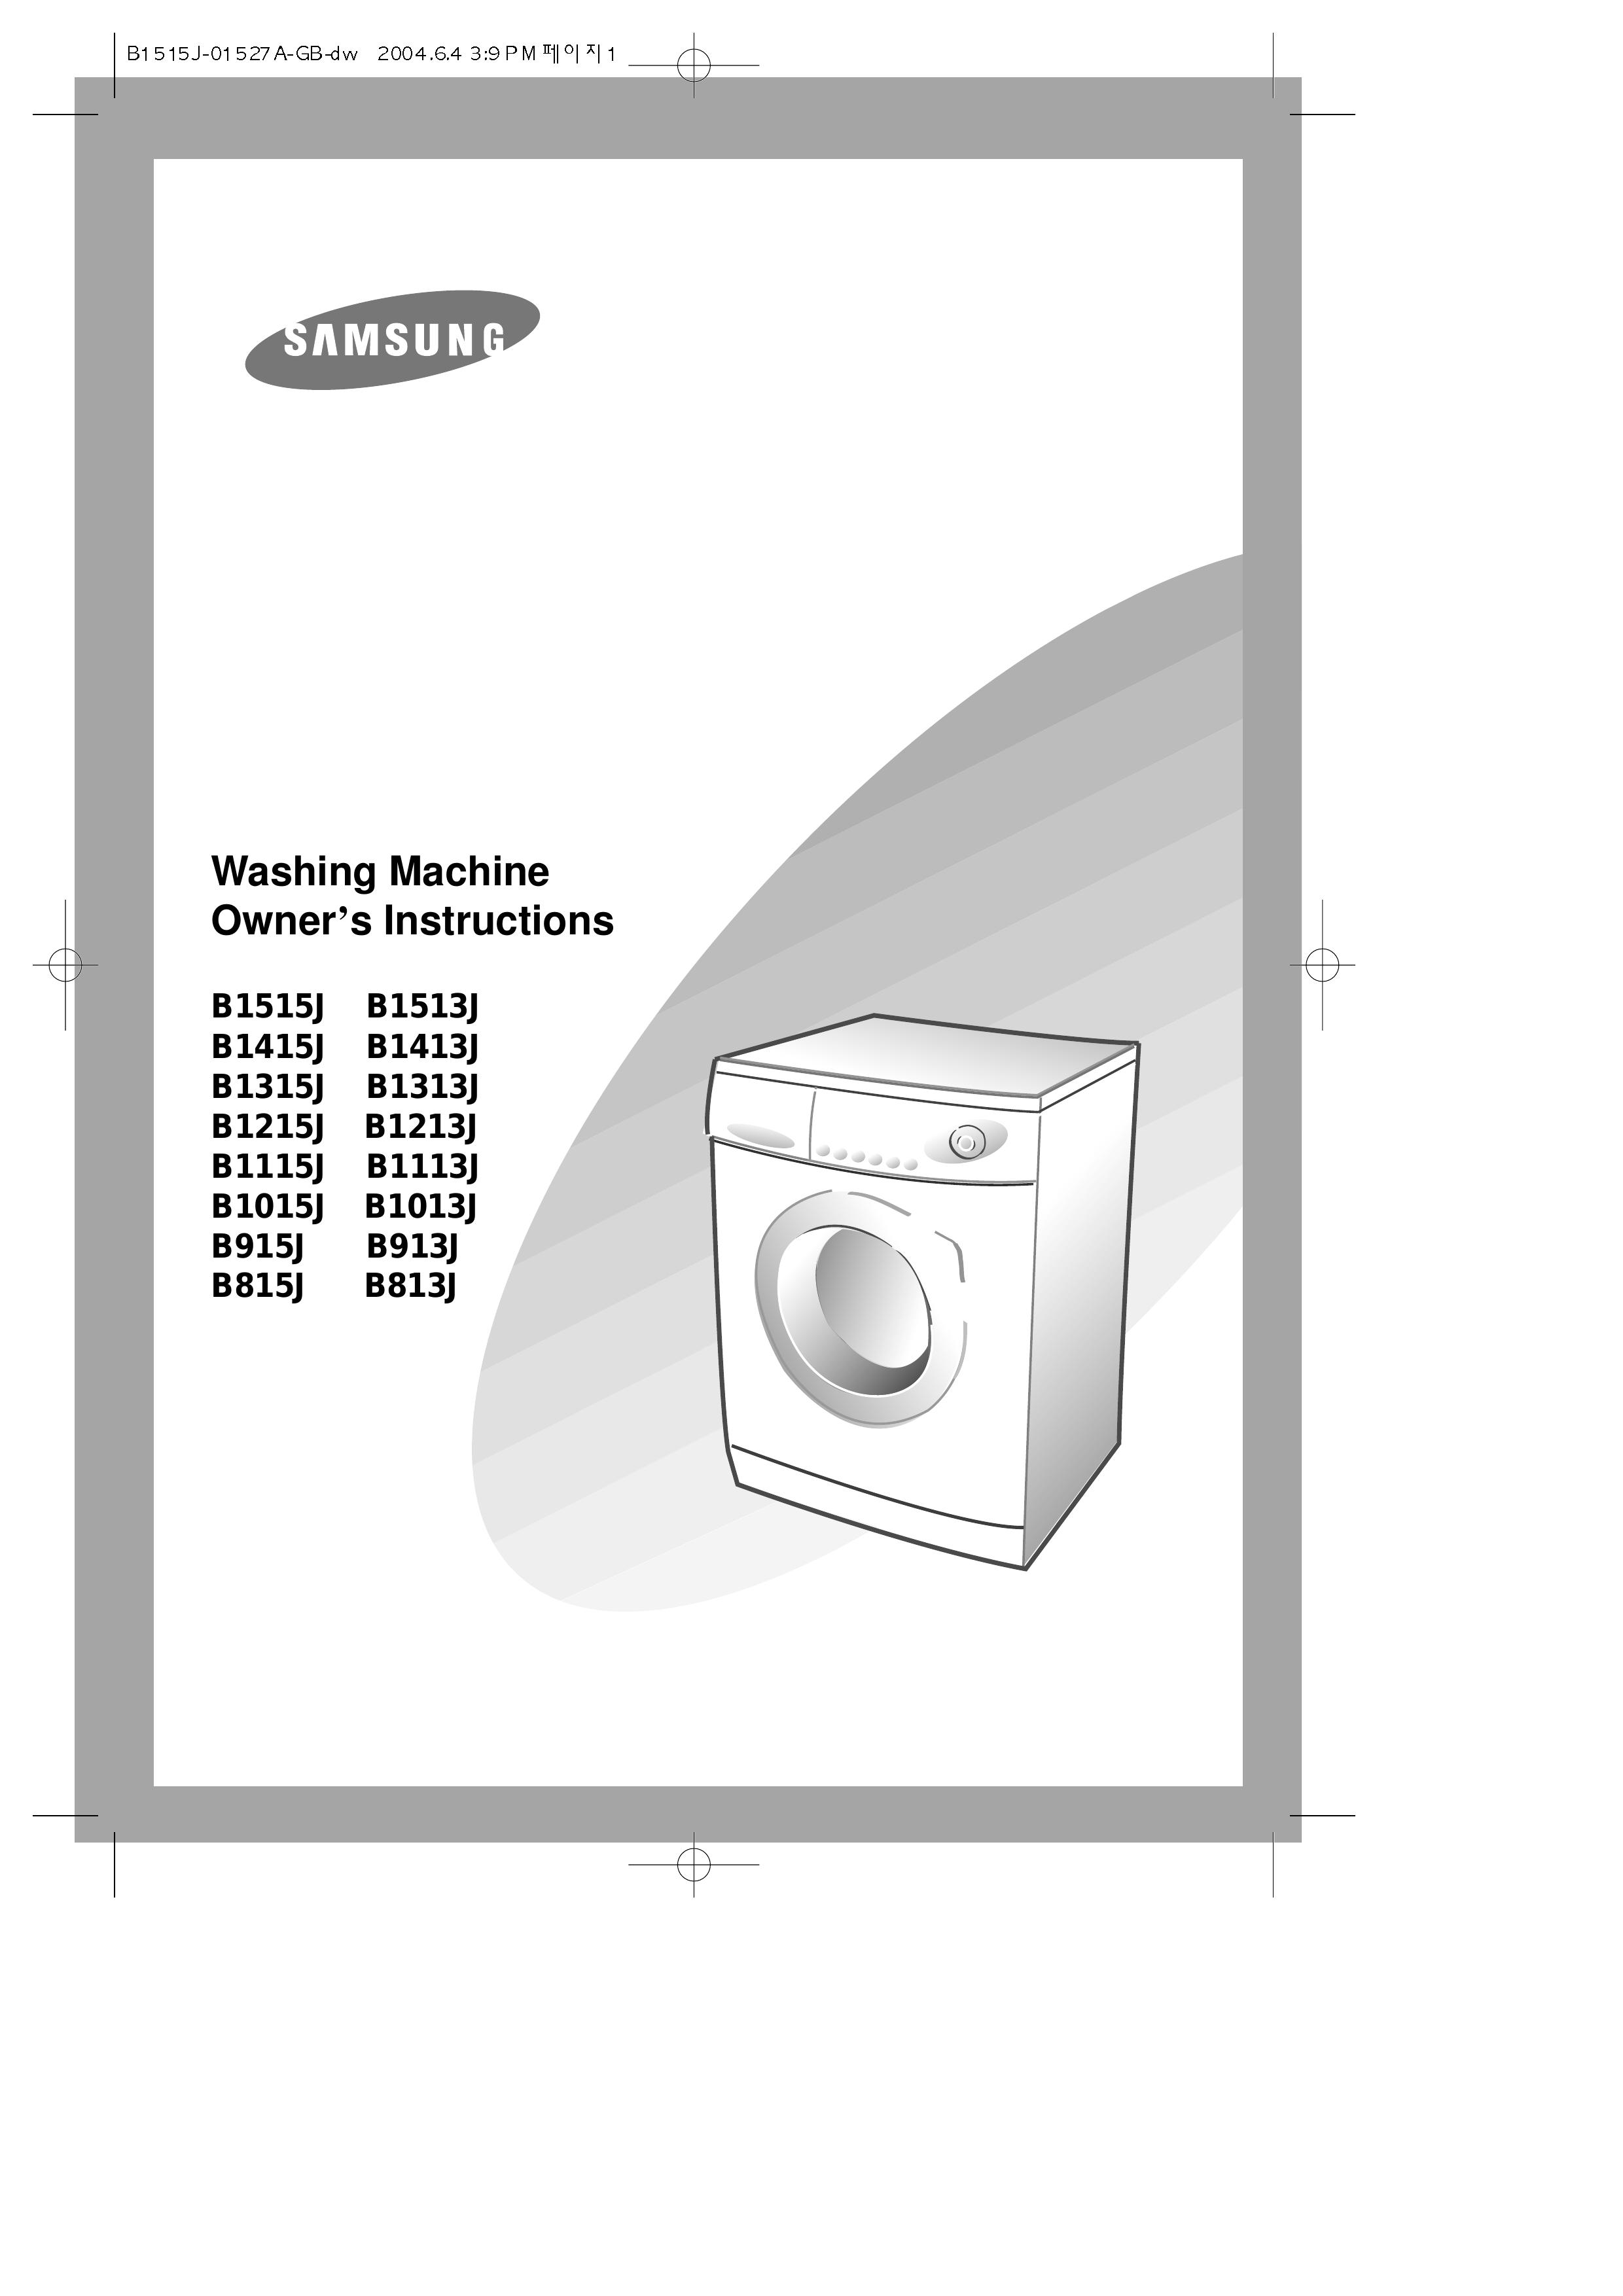 Samsung B913J Washer User Manual